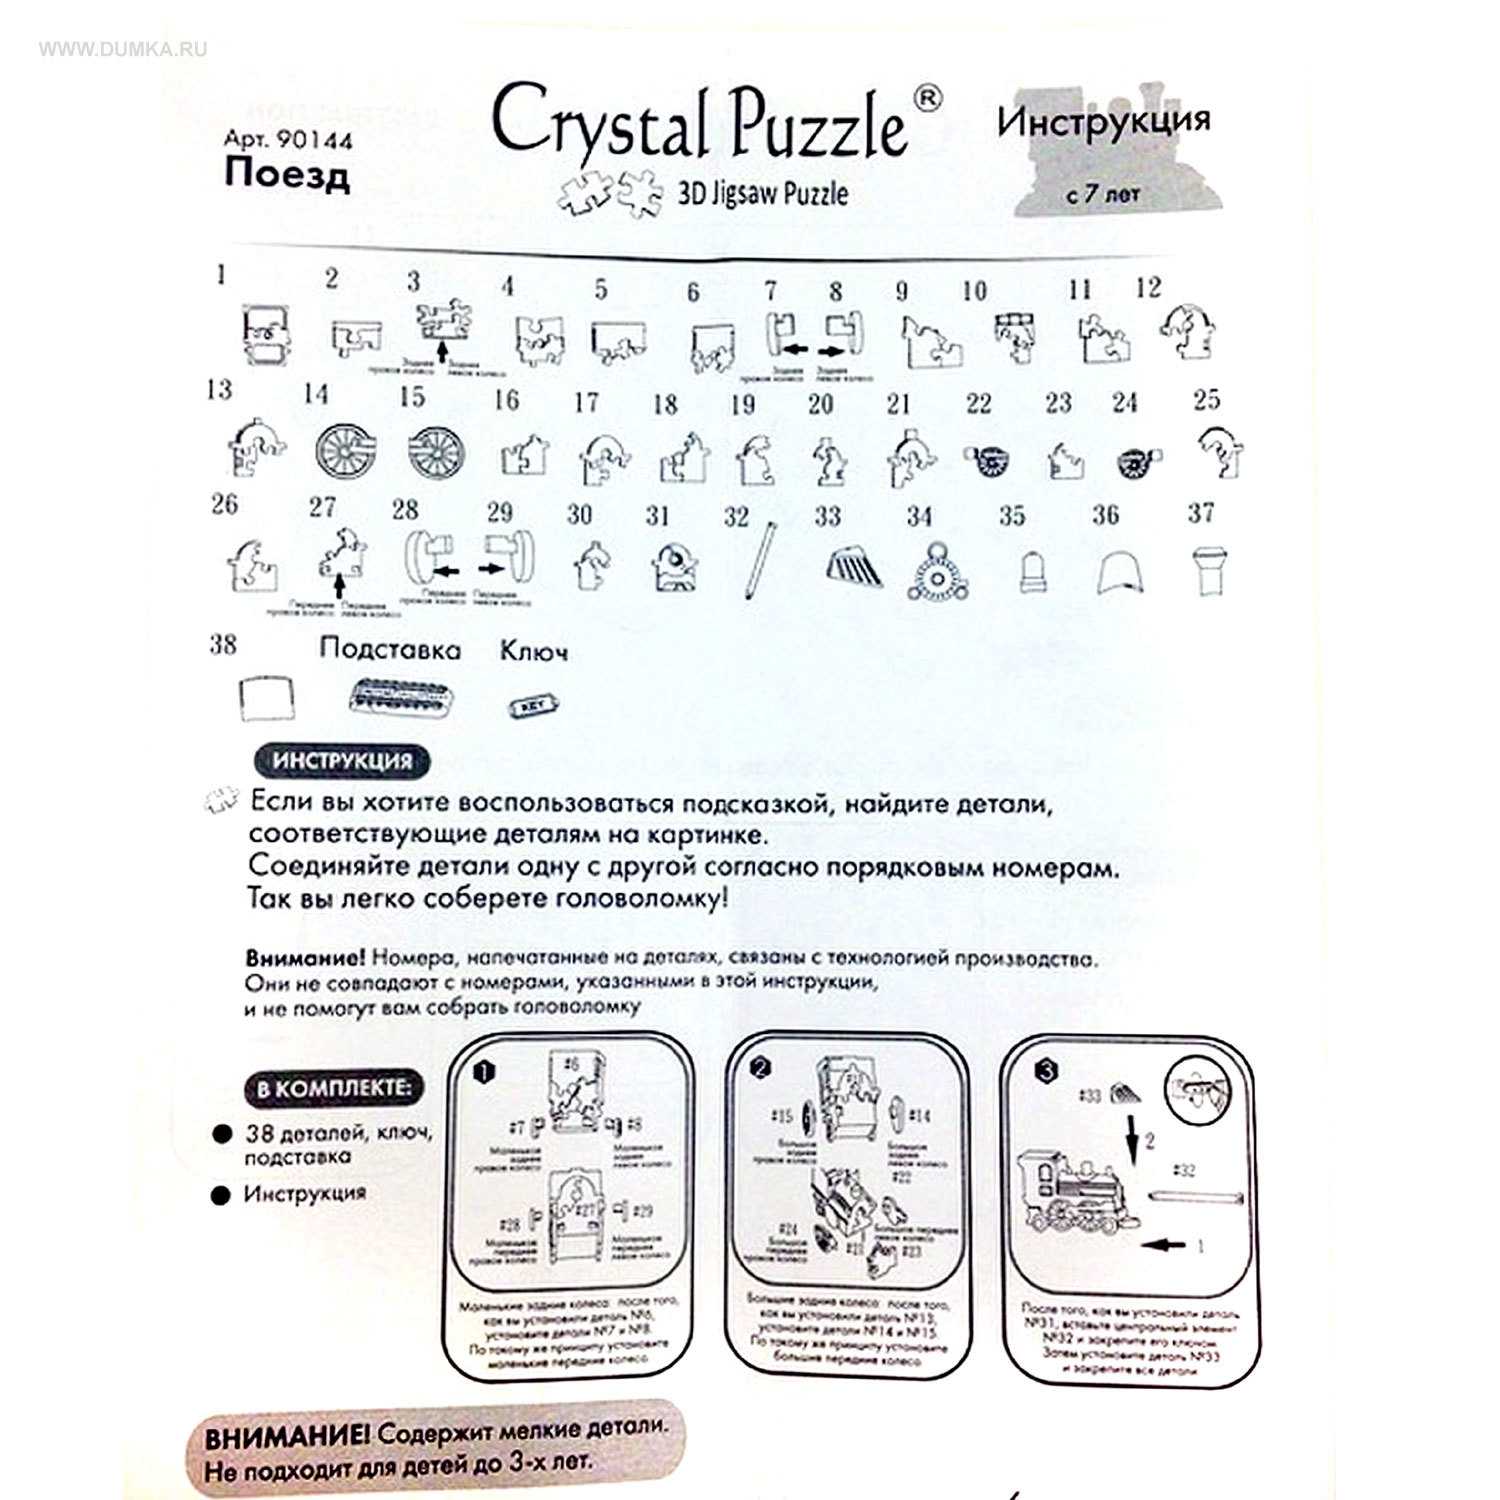 Инструкция 003. Кристальный пазл 3д лебедь инструкция. Кристальные пазлы 3д инструкция лебедь город игр. Crystal Puzzle лебедь инструкция. Головоломка Crystal Puzzle инструкция.